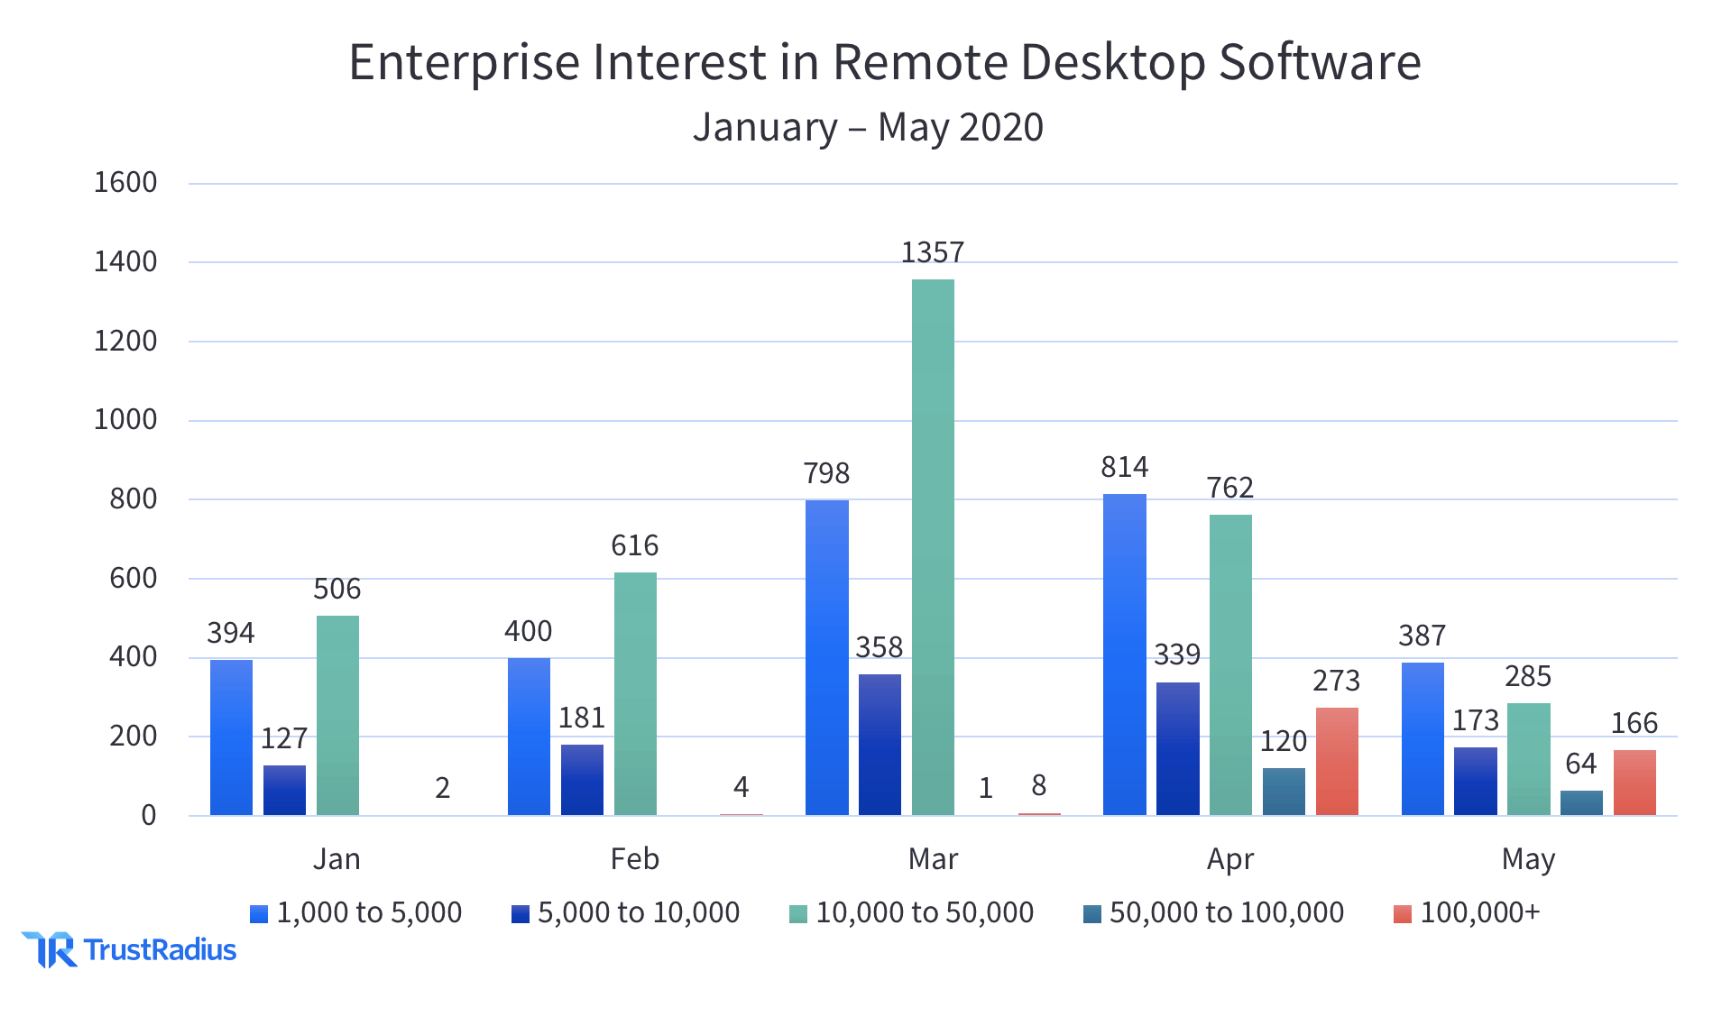 Enterprise interest in the remote desktop software